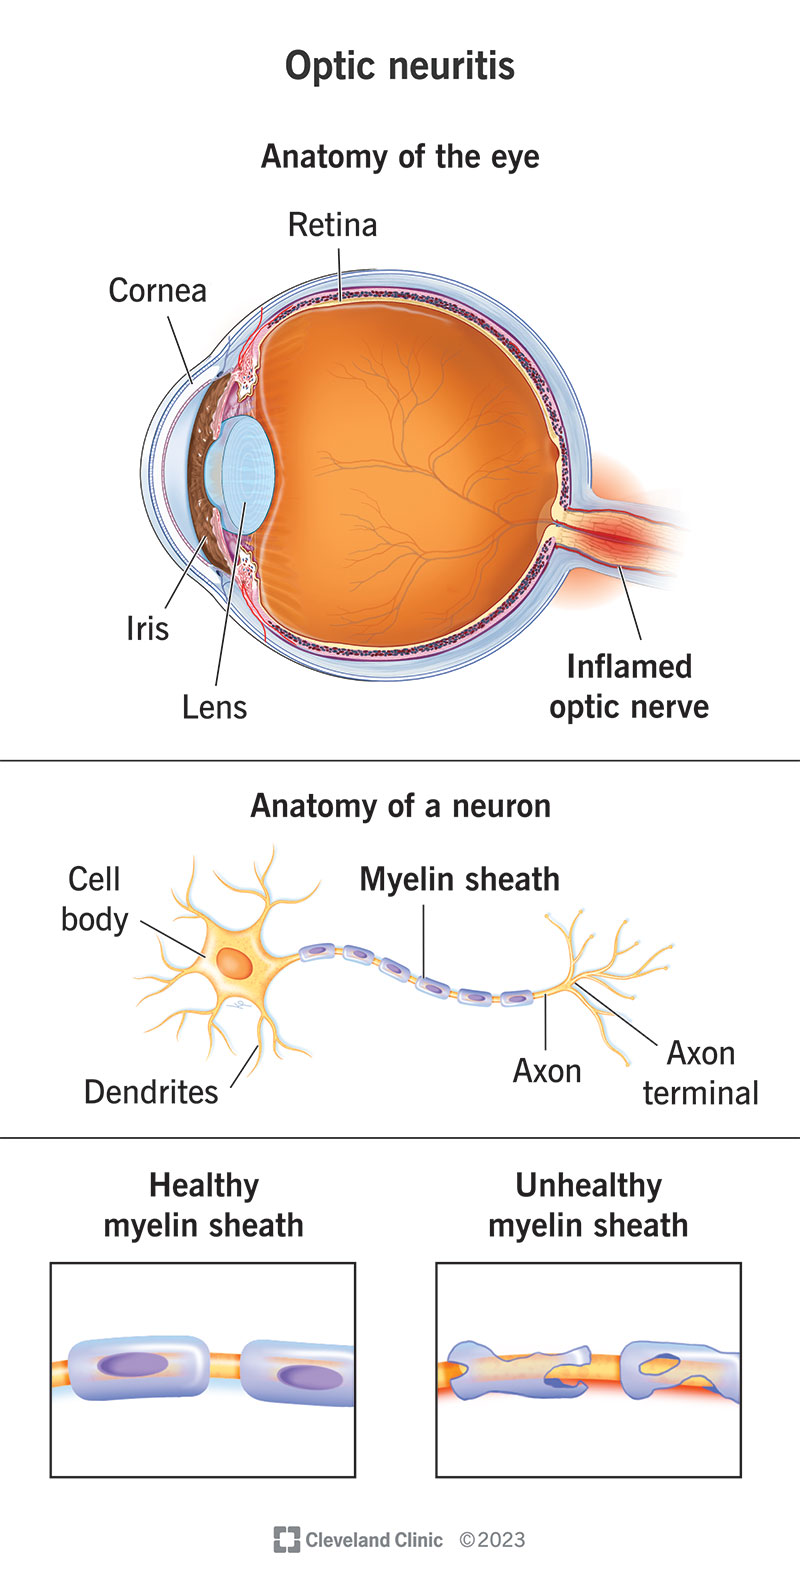 Neurite ottica, anatomia dell'occhio, anatomia di un neurone, guaina mielinica sana e malsana